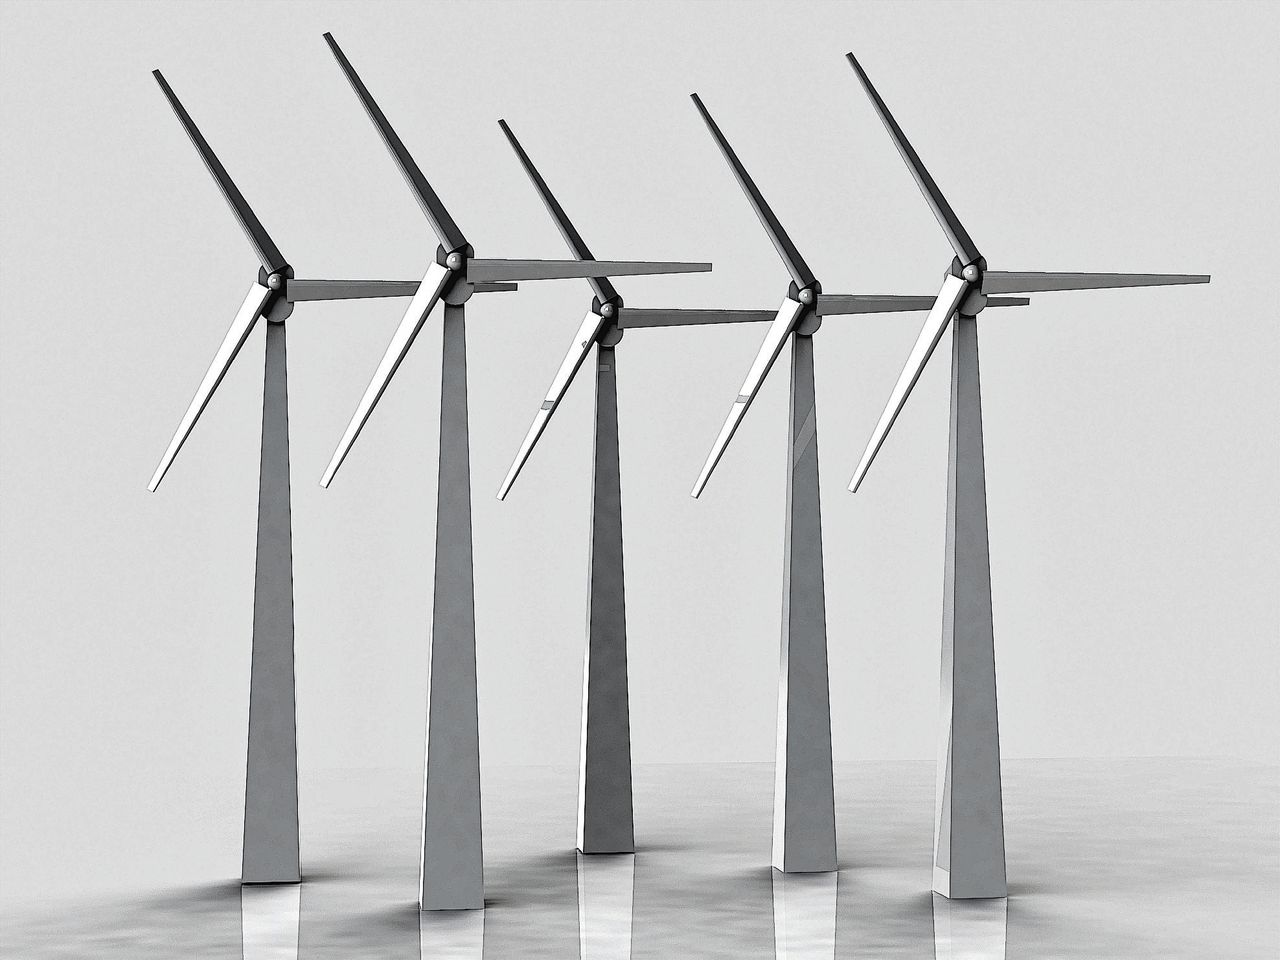 Willen burgers windturbines, of juist niet?